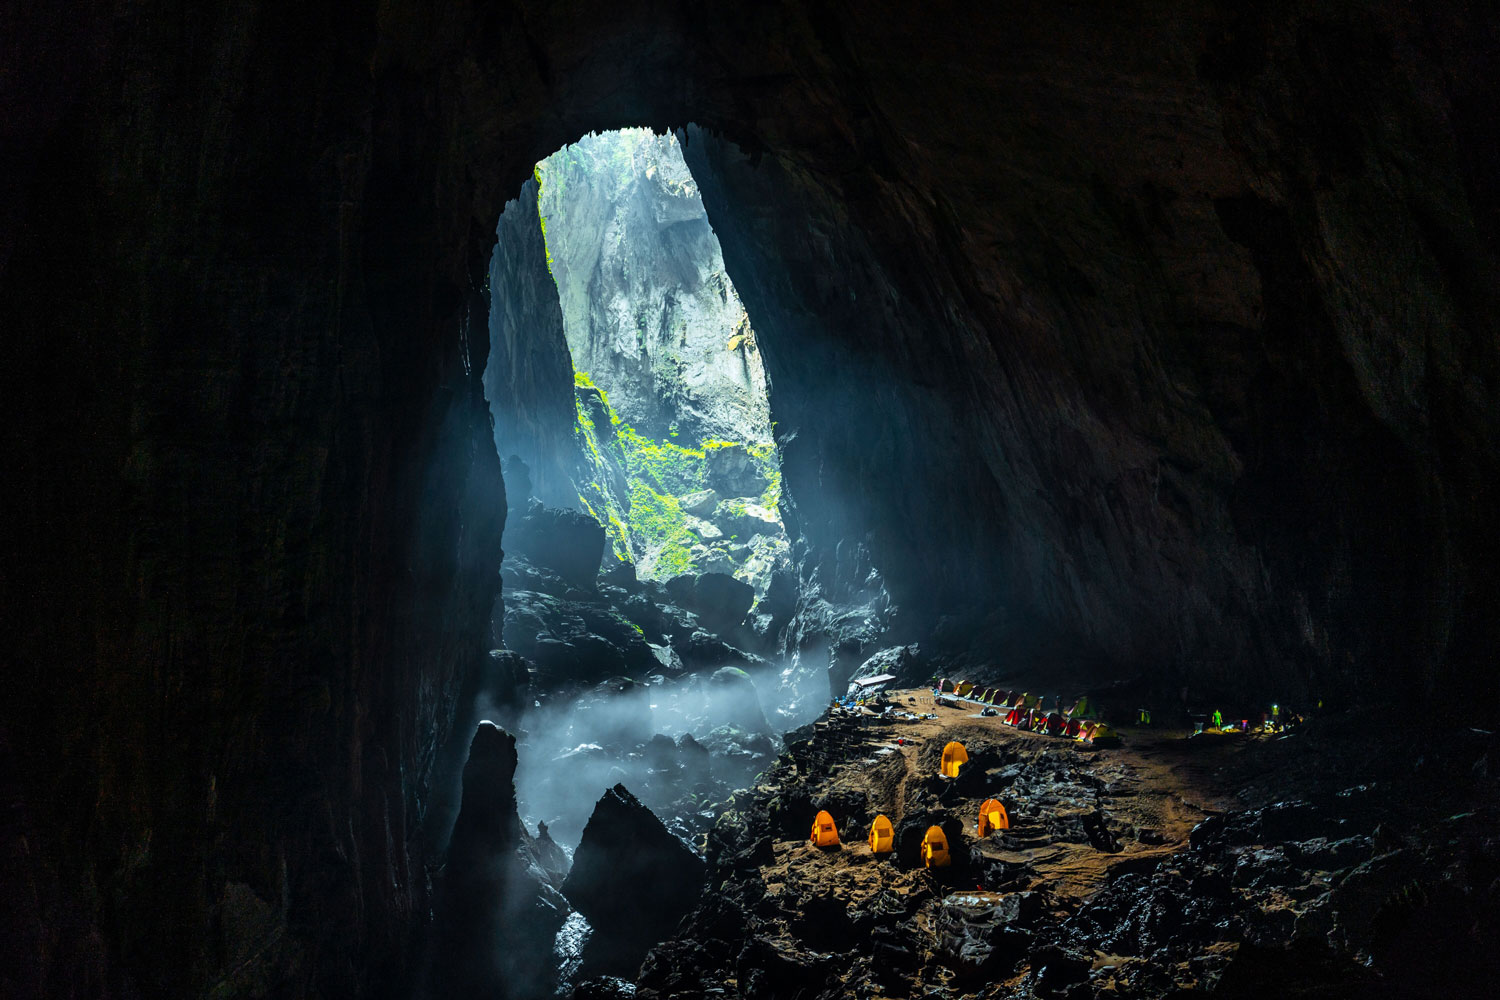 "Cueva